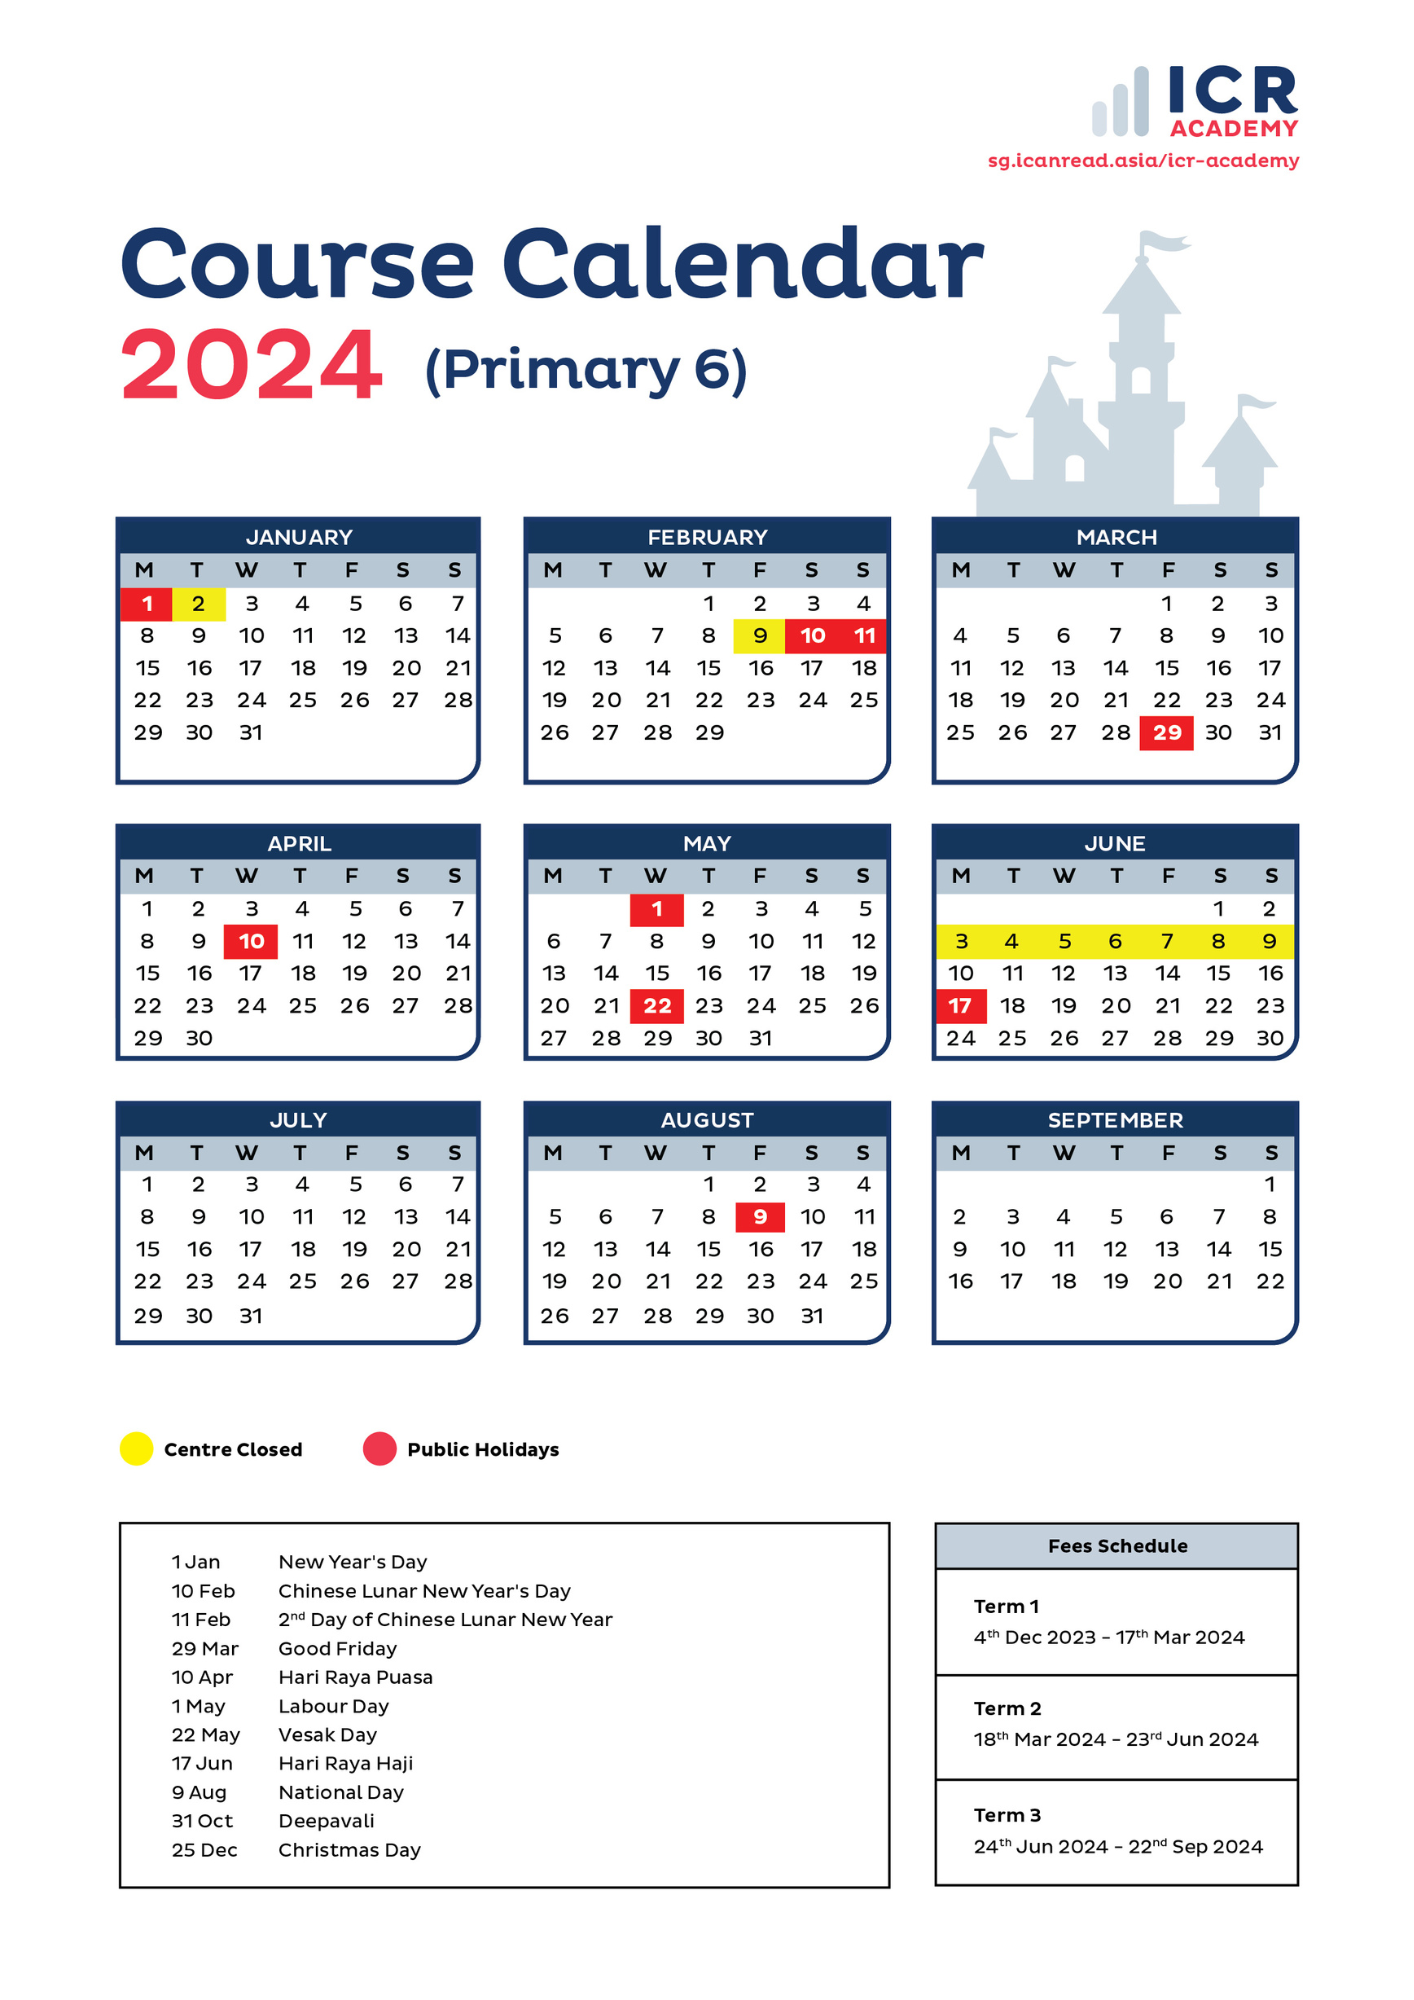 [2024] ICR Academy Course Calendar (P6)